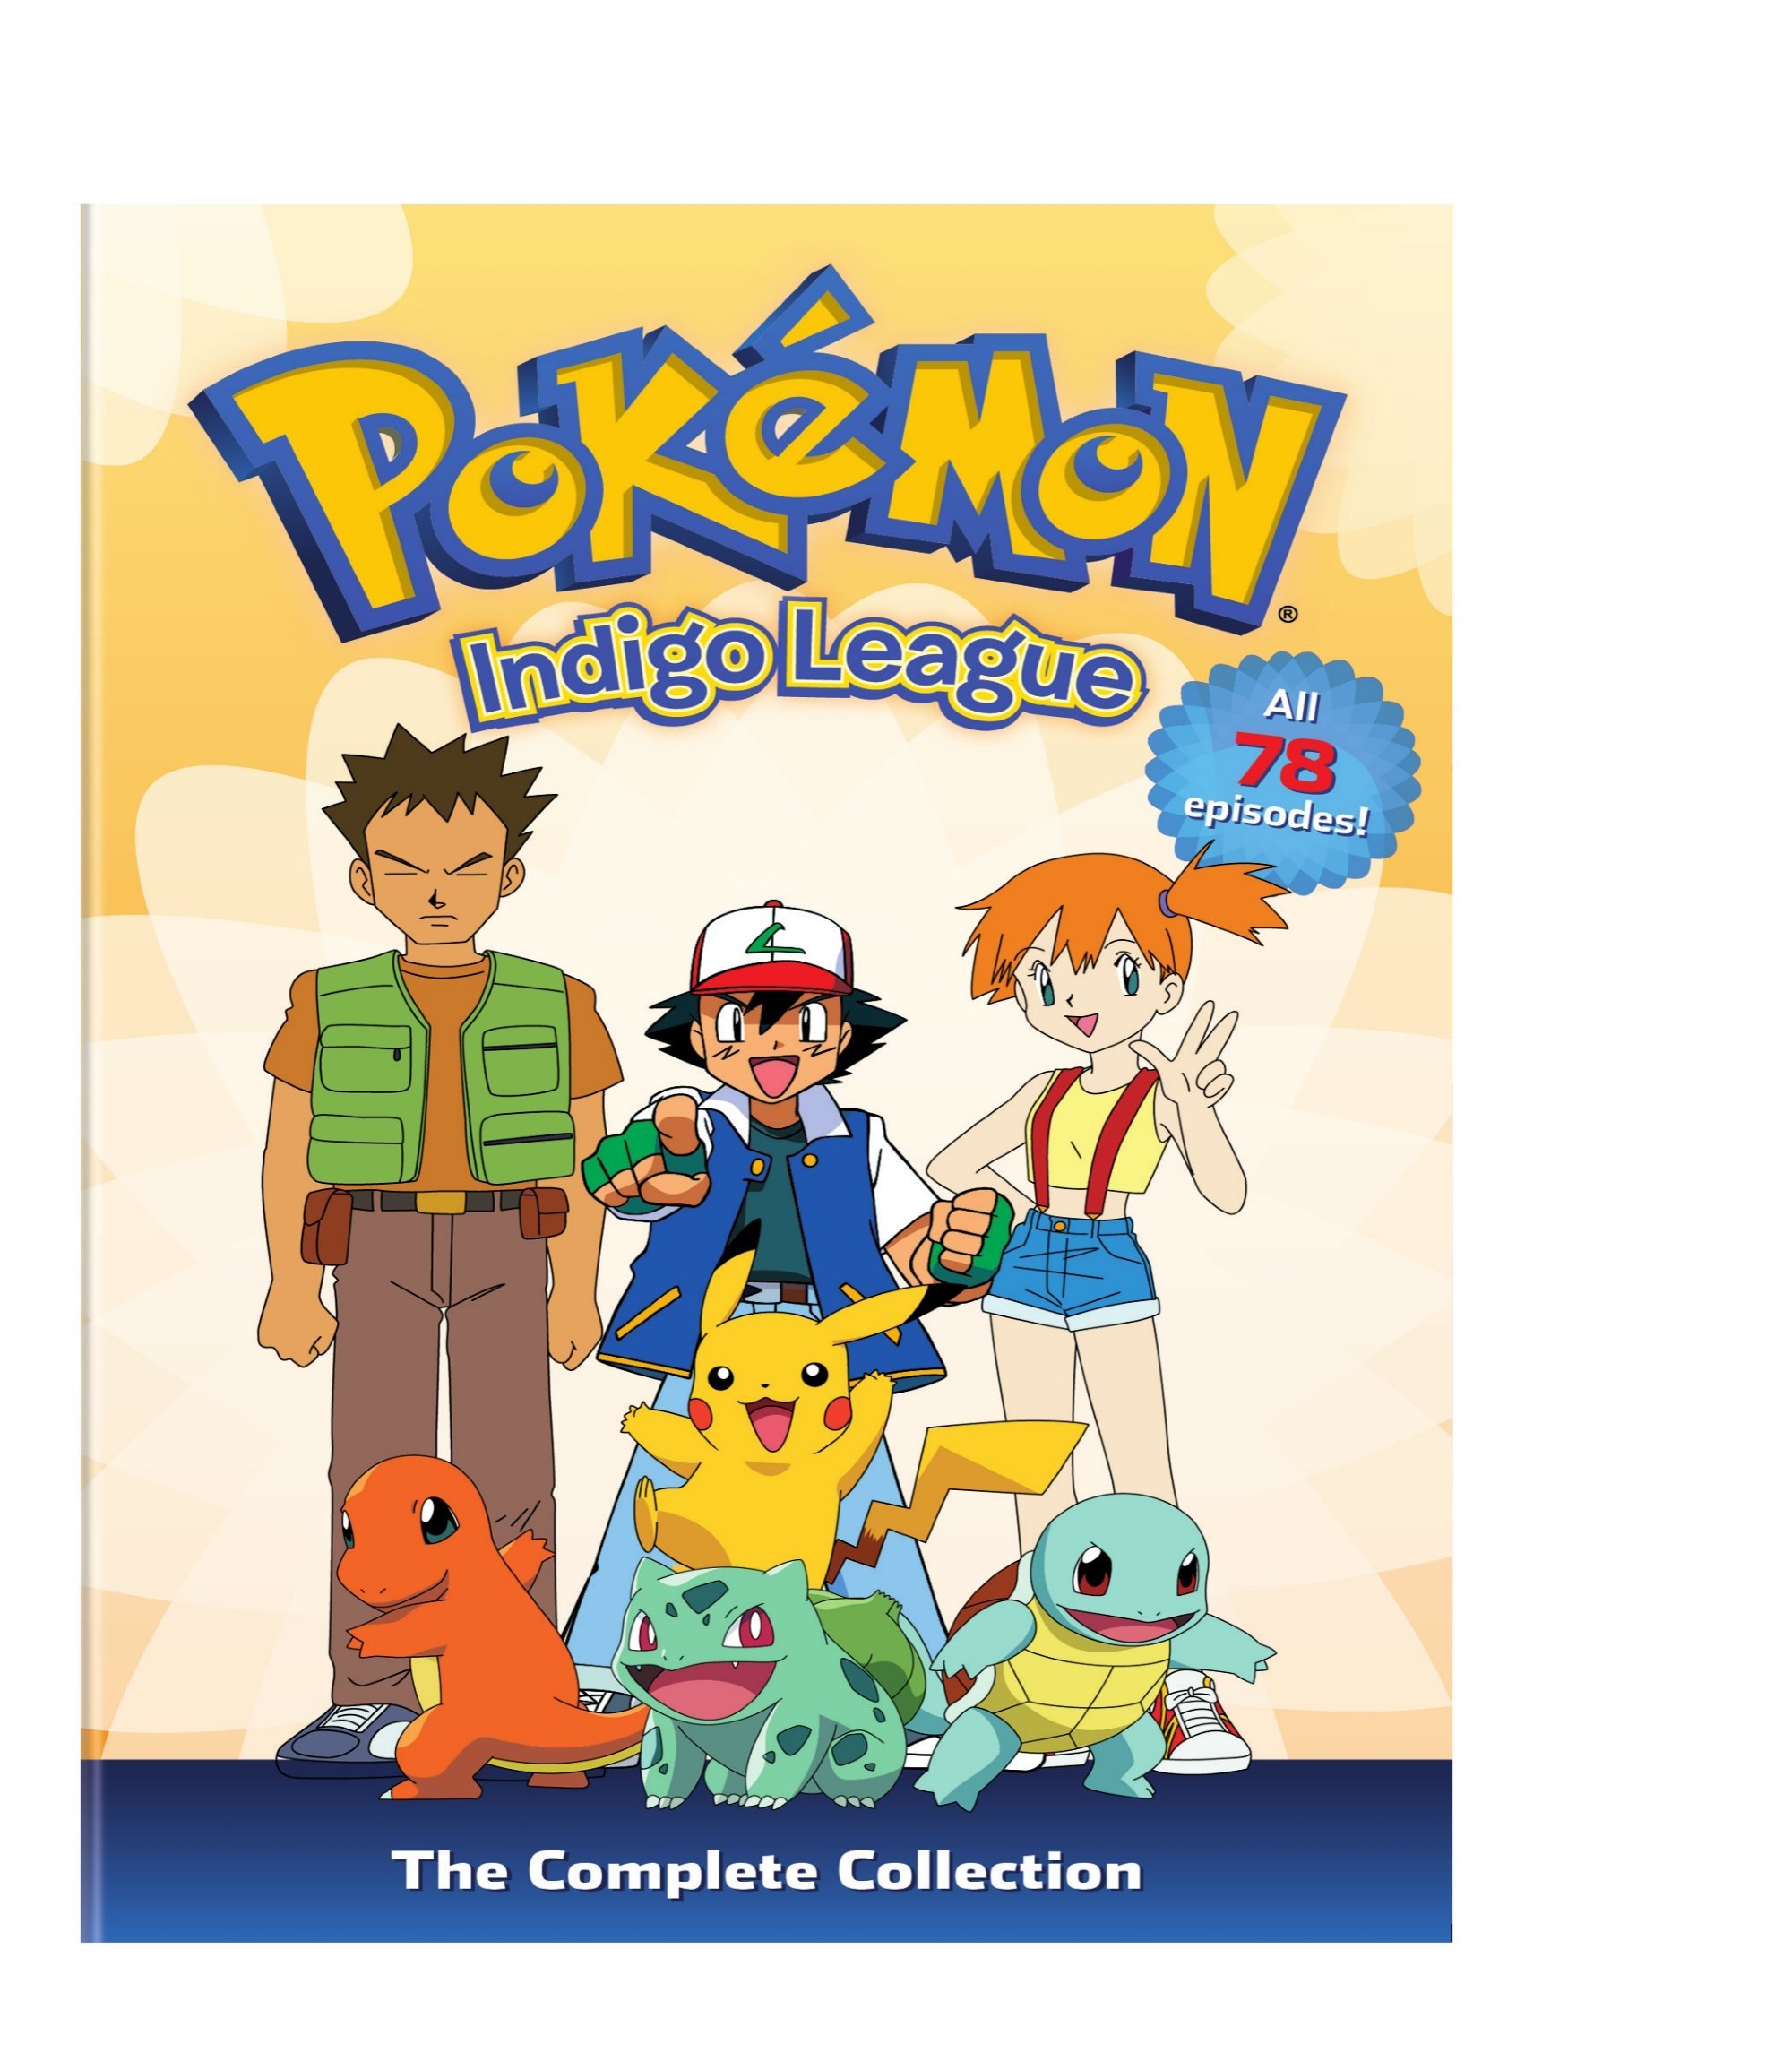 Pokemon Season 1: Indigo League – The Complete Collection